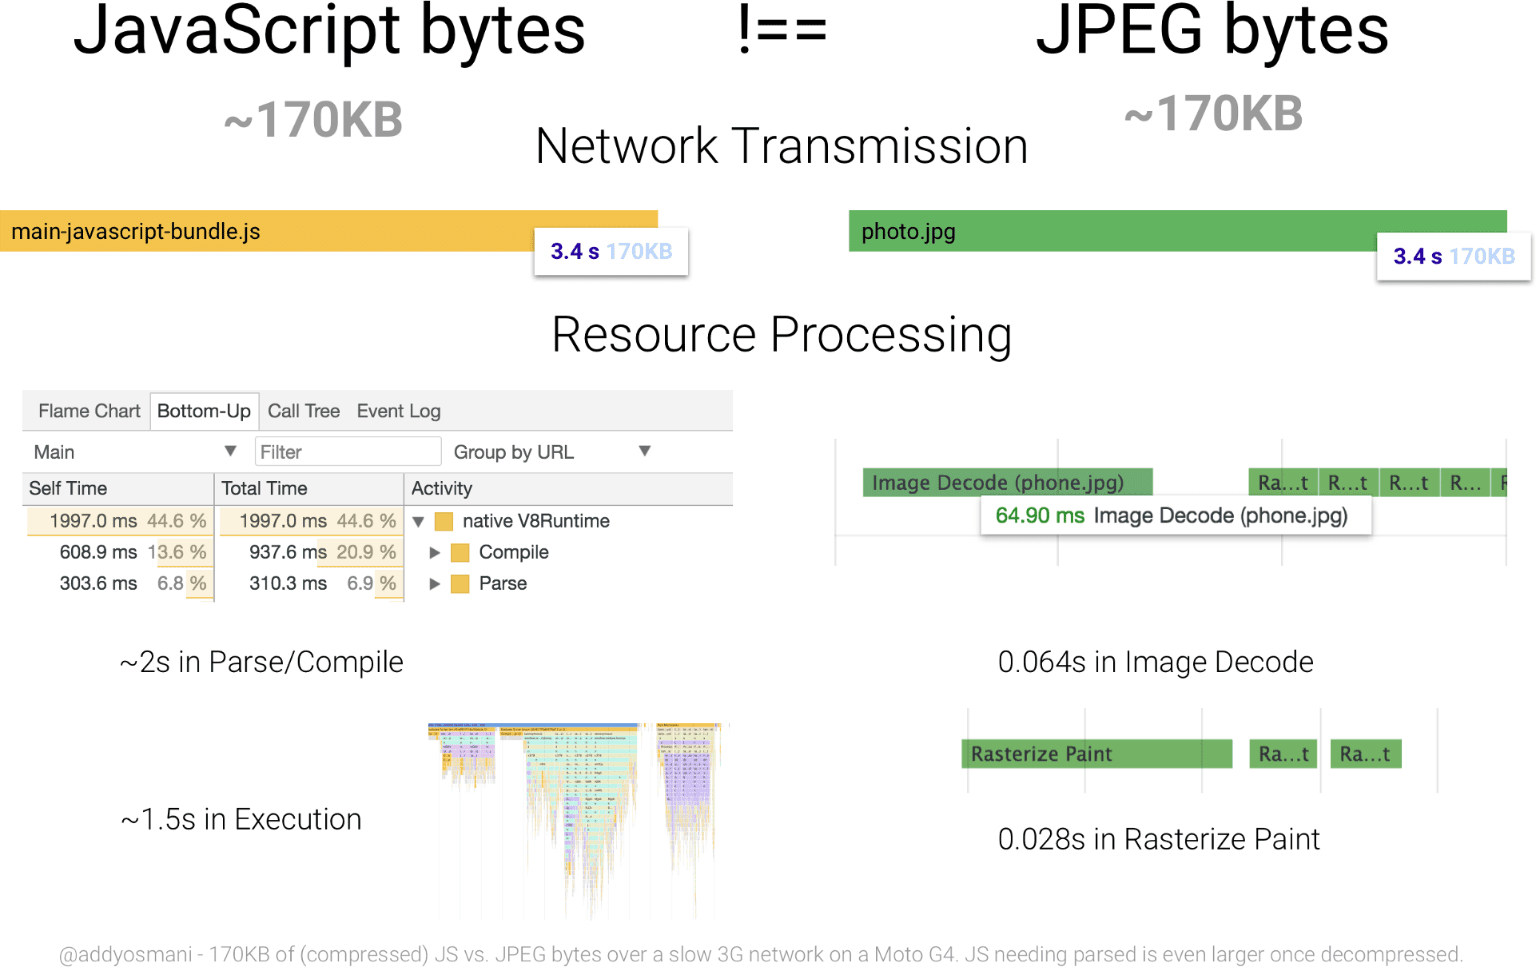 這張圖表比較 170 KB 和大小相等的 JPEG 圖片處理時間。與 JPEG 相比，JavaScript 資源的位元組耗用的資源會大幅增加。